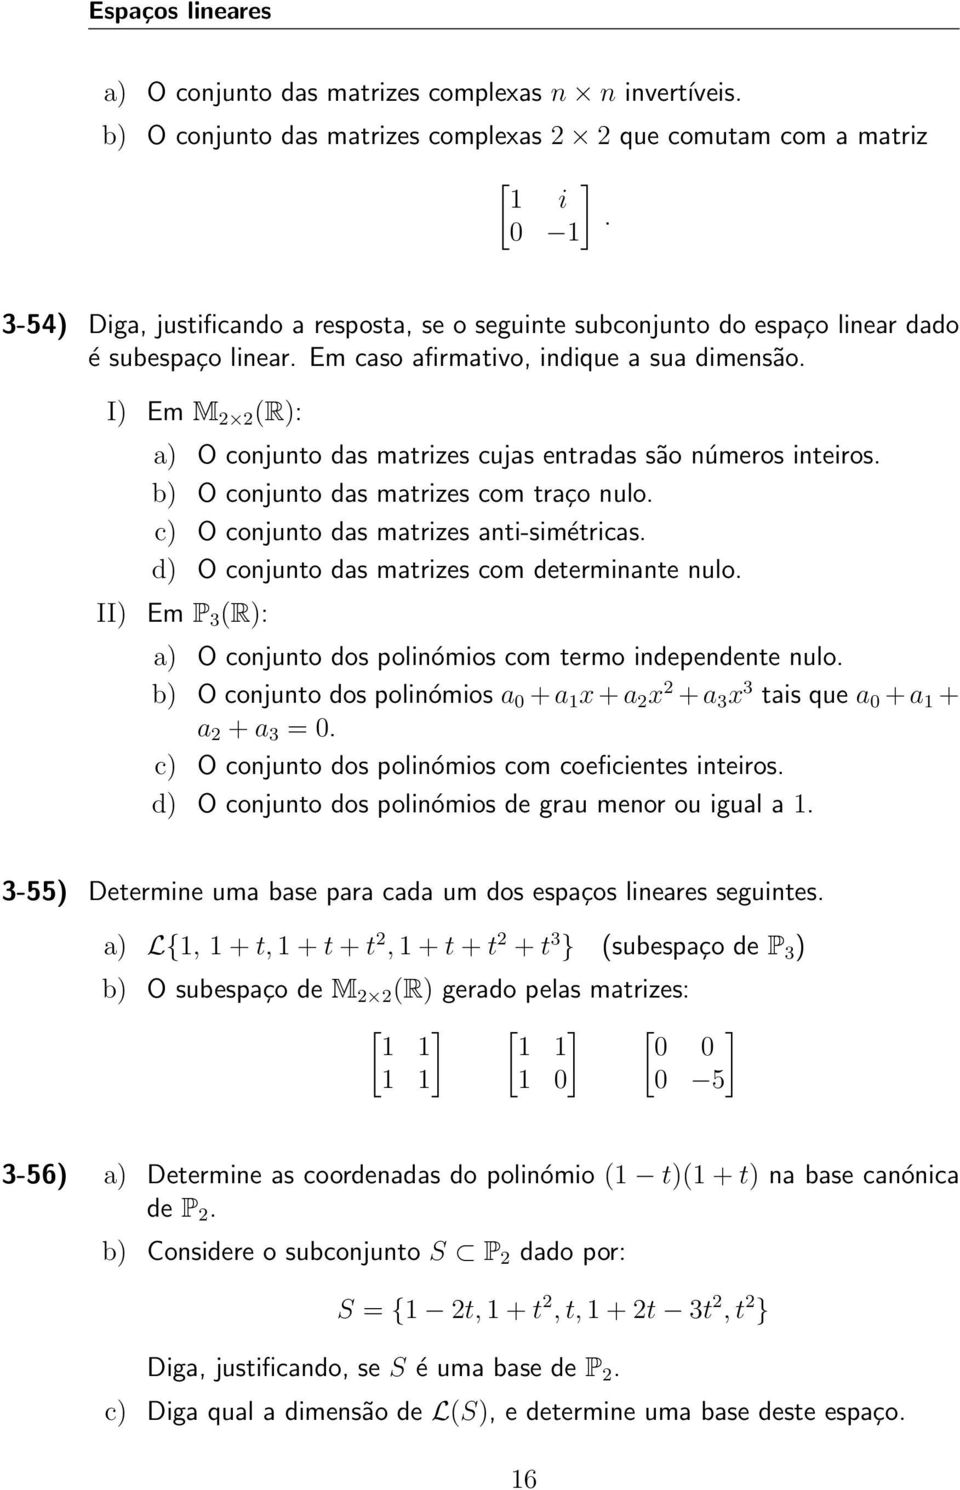 I) Em M 2 2 (R): a) O conjunto das matrizes cujas entradas são números inteiros. b) O conjunto das matrizes com traço nulo. c) O conjunto das matrizes anti-simétricas.